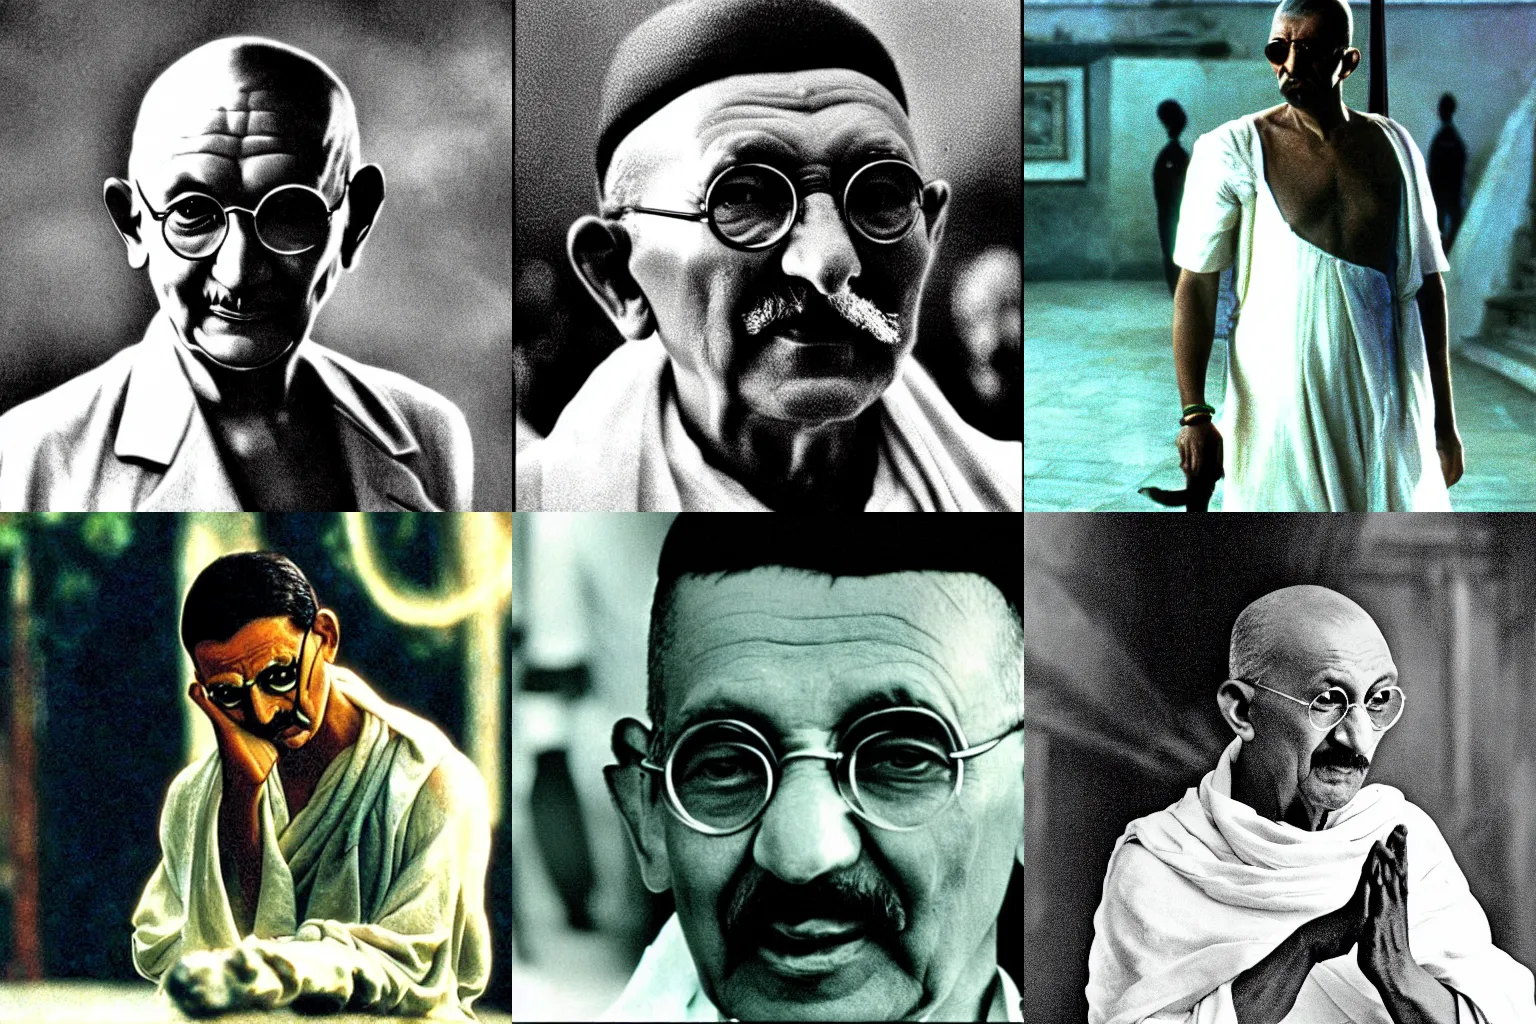 Prompt: Gandhi as Morpheus in The Matrix (1999)